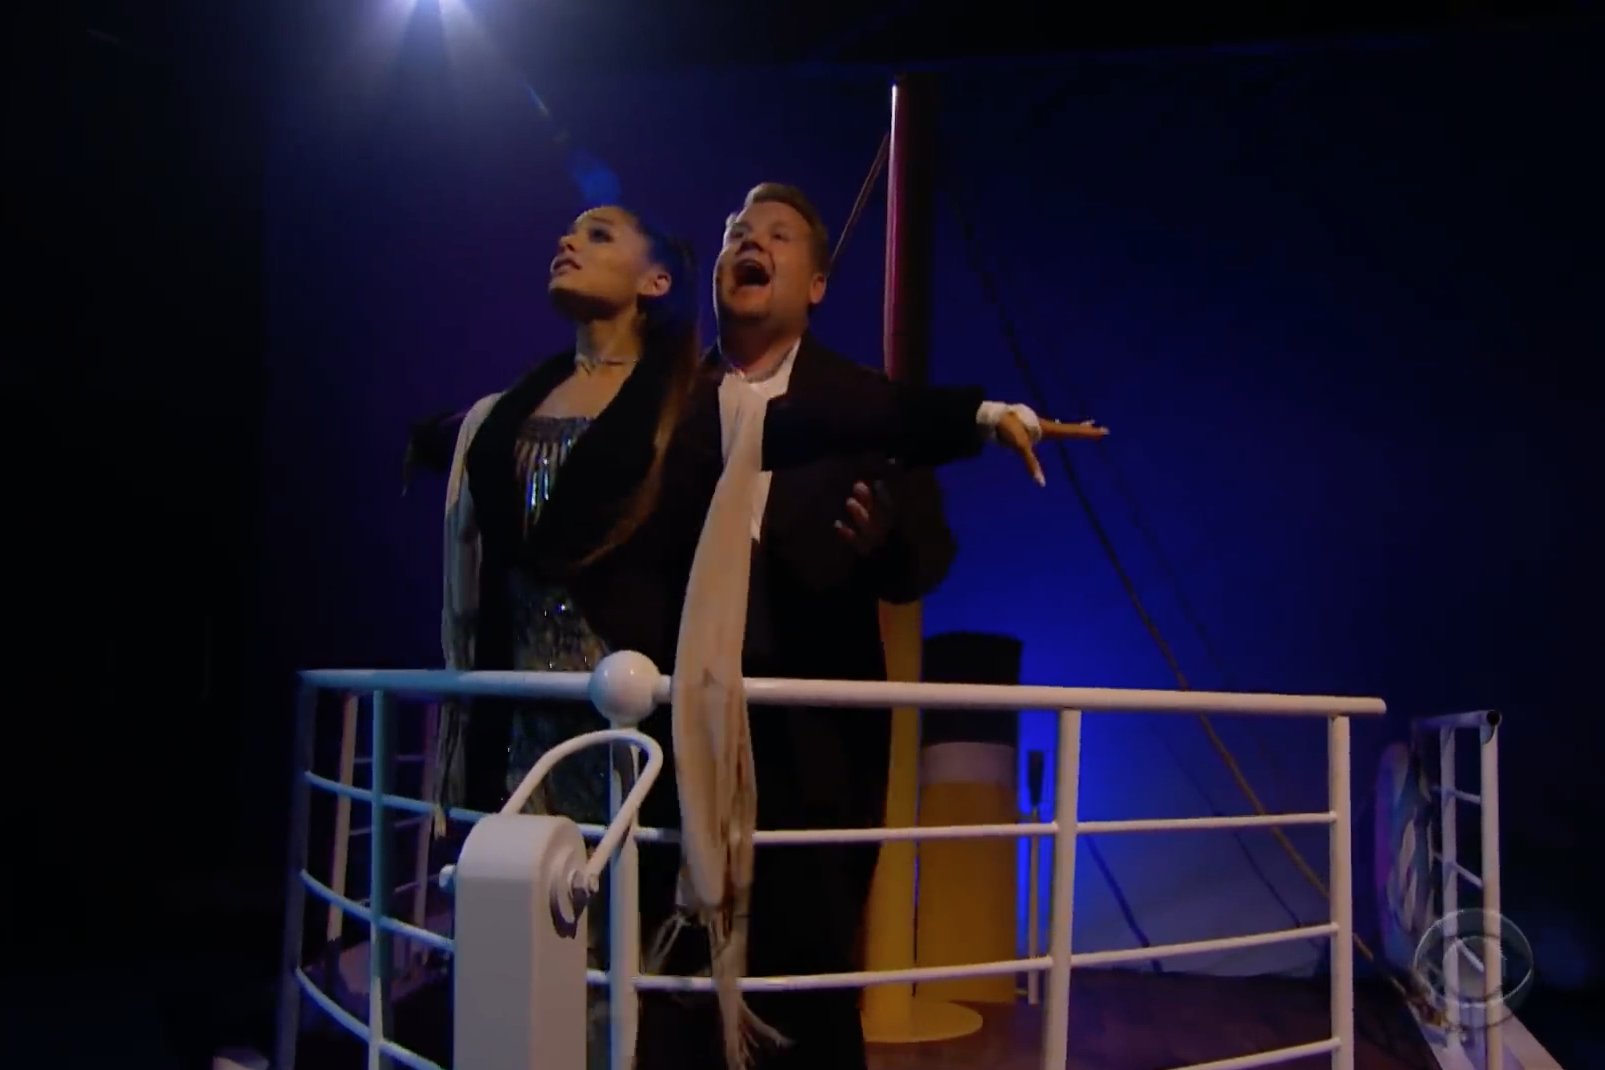 ariana grande james corden titanic movie musical remake video watch